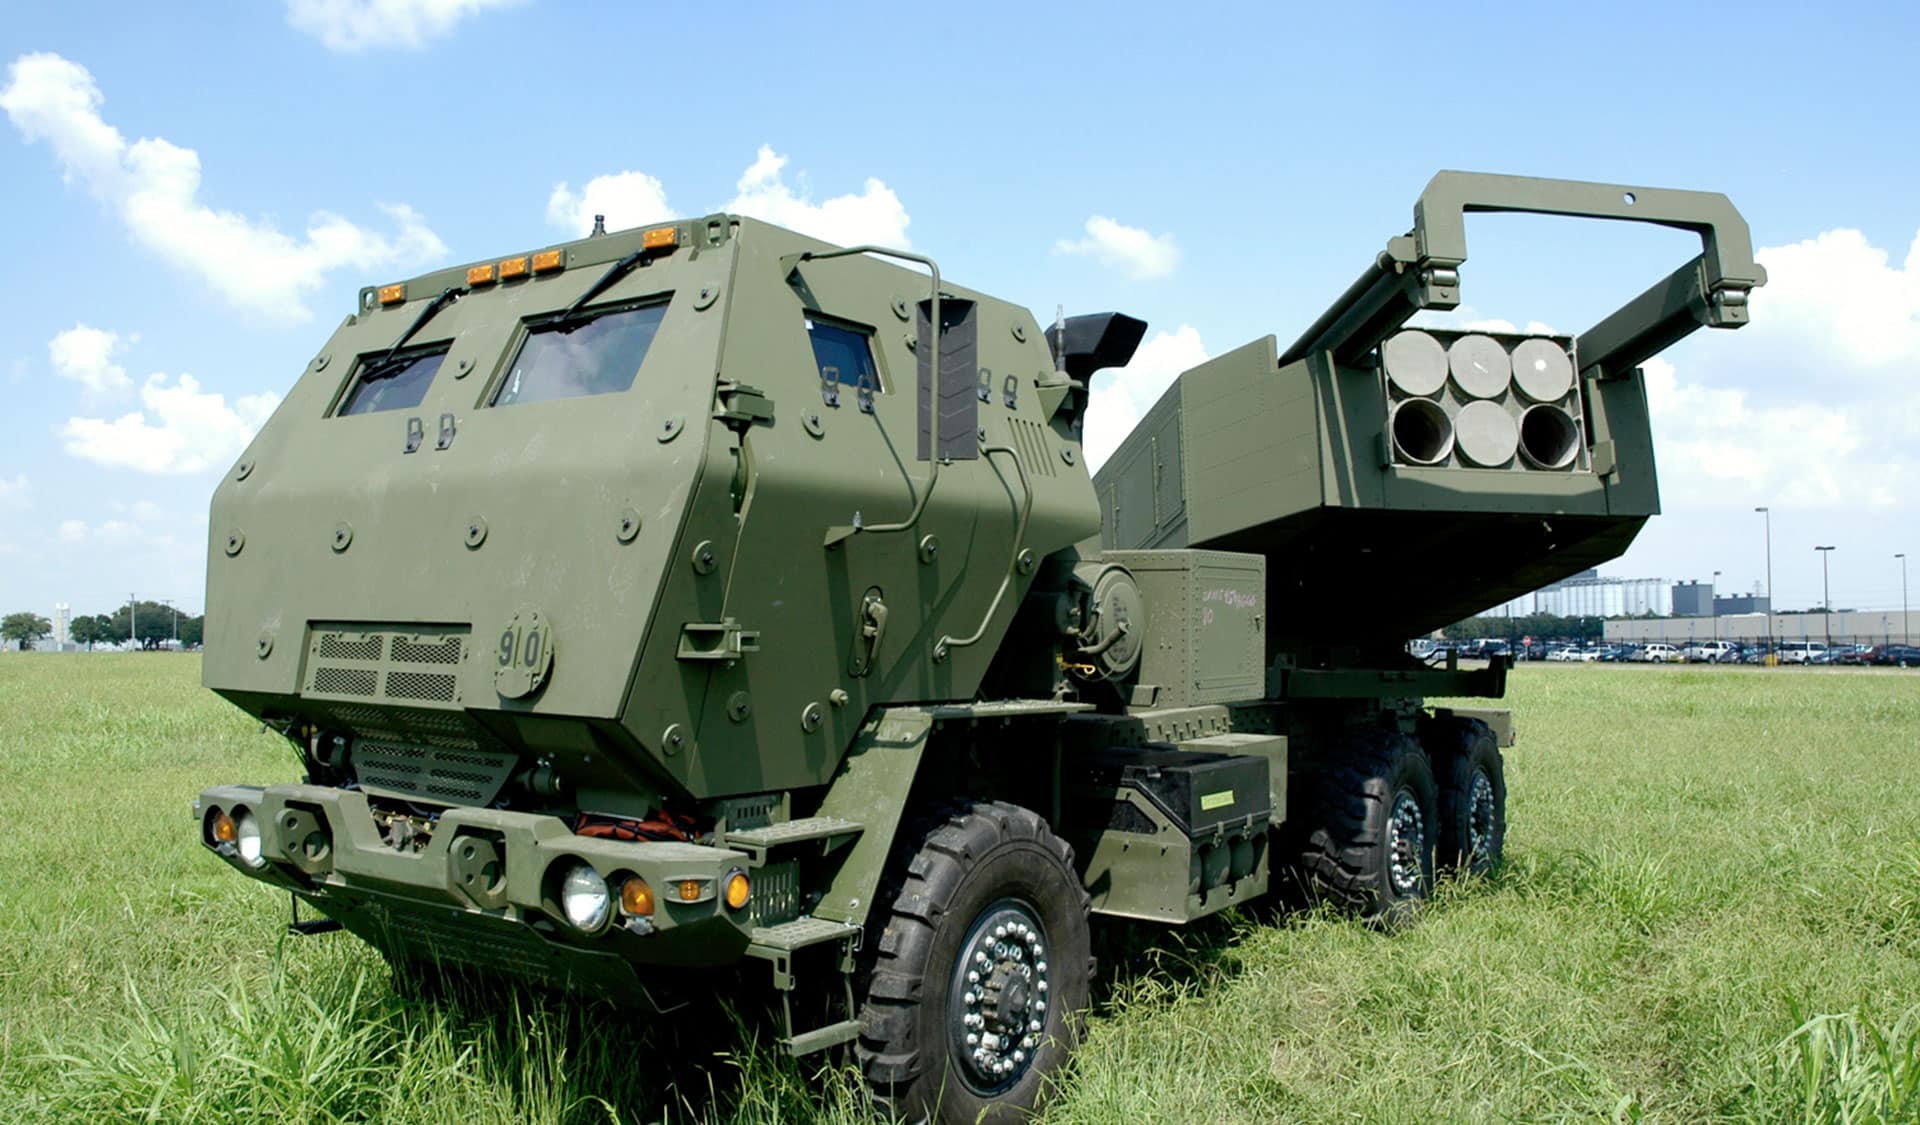 بولندا تسعى للحصول على أنظمة قاذفة صواريخ متنقلة من HIMARS